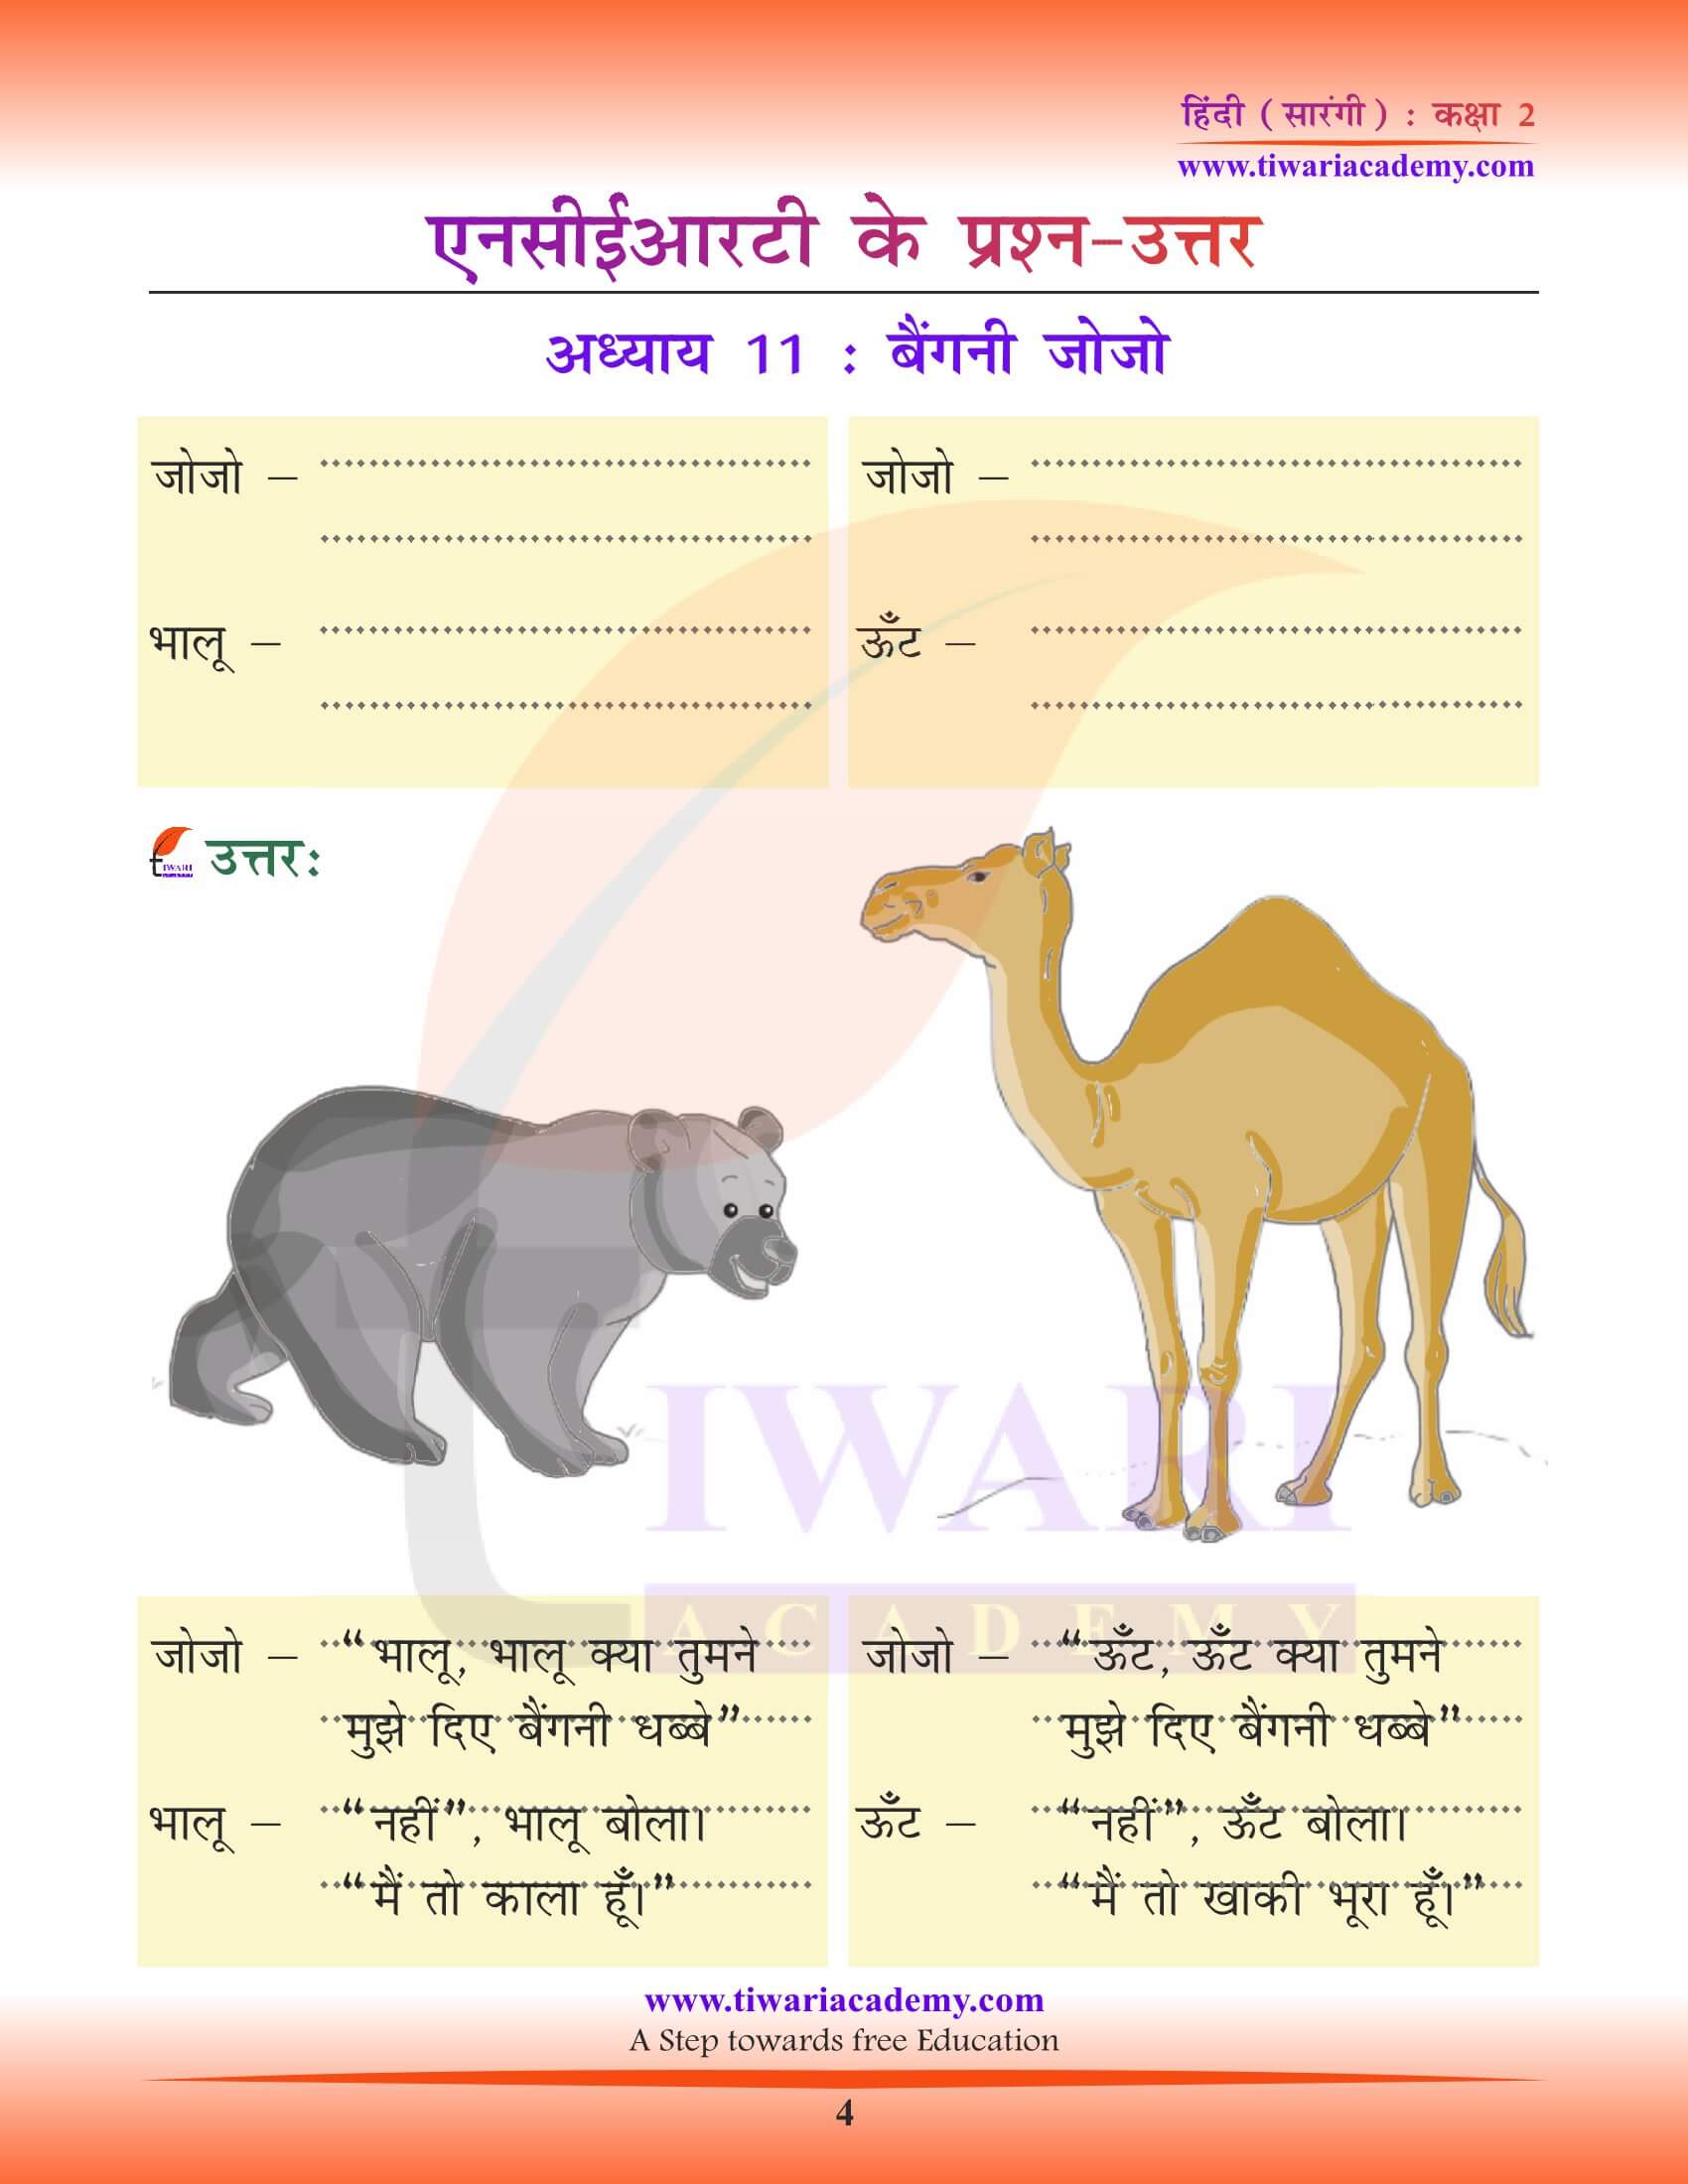 कक्षा 2 हिंदी सारंगी अध्याय 11